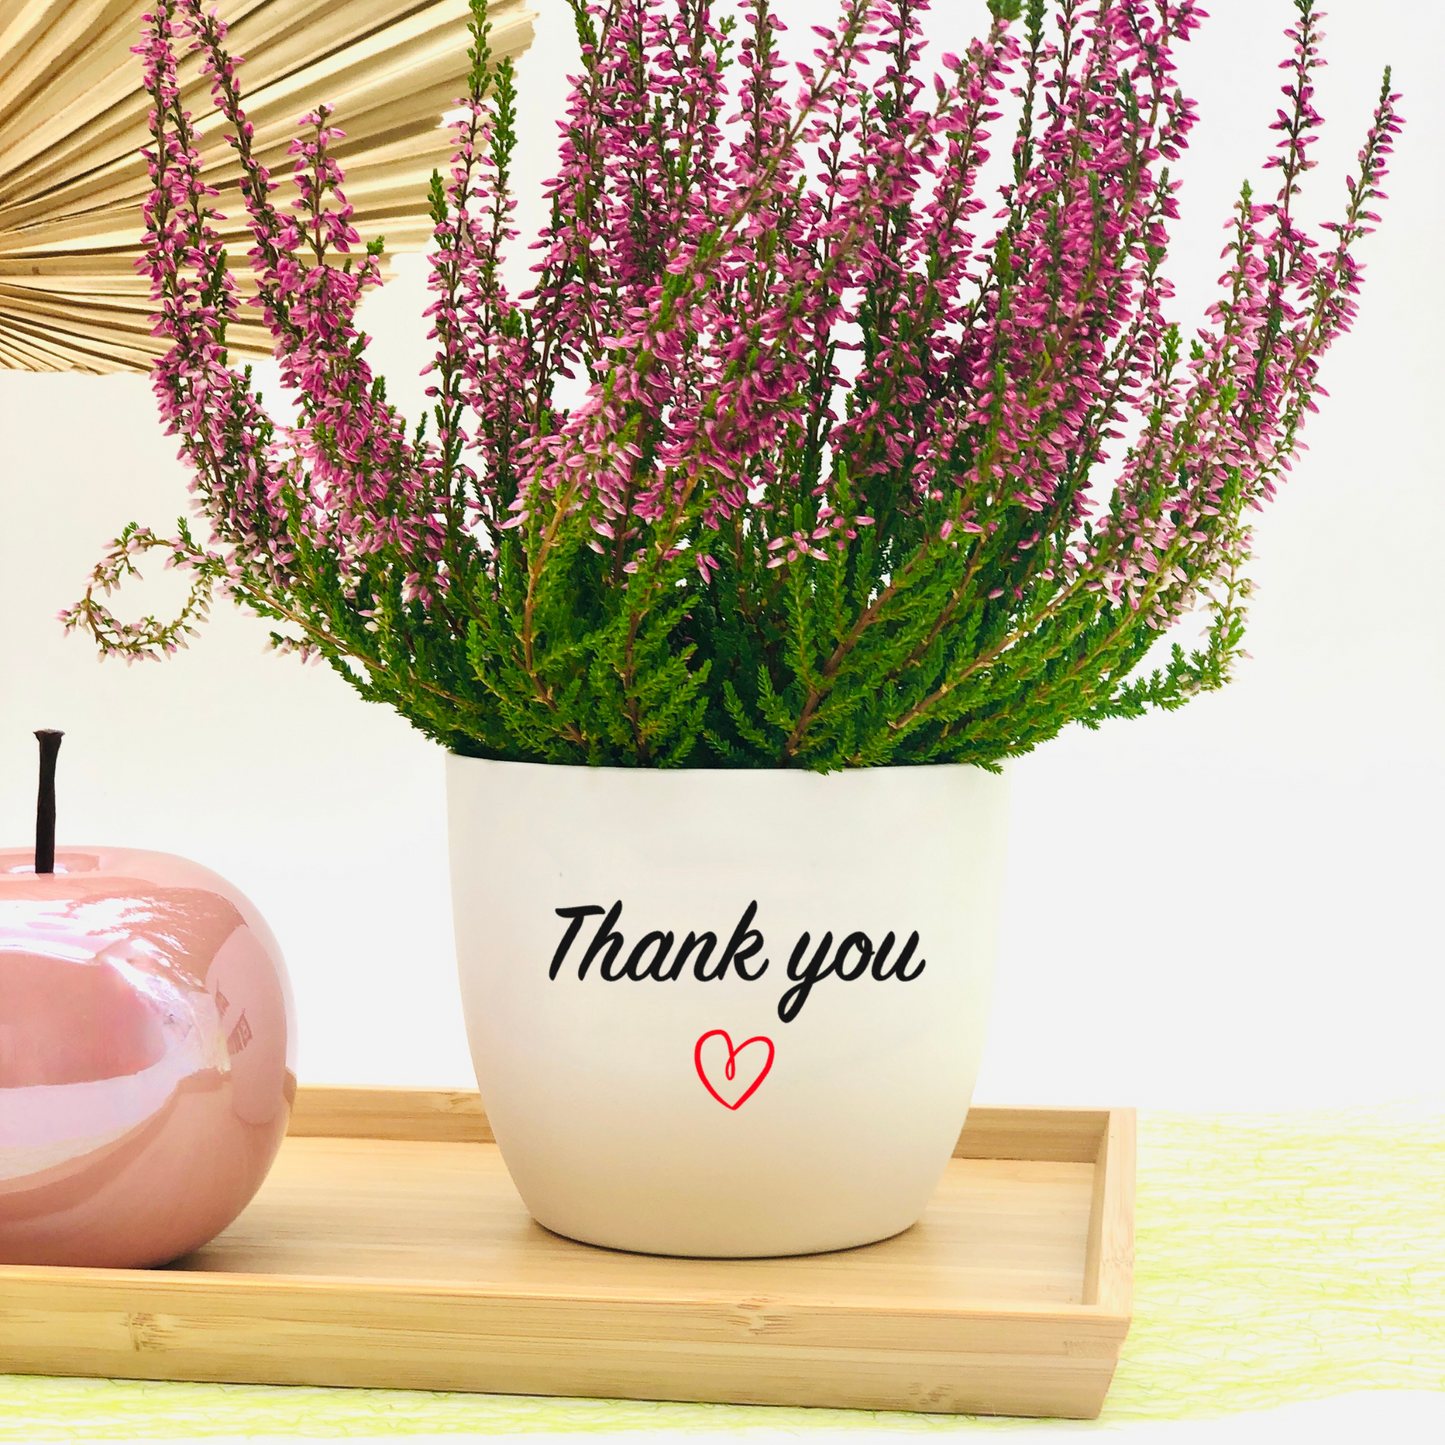 Blumentopf Danke - Geschenk zum Danke sagen - Geschenk zum Bedanken  - Dankeschön Geschenk -personalisiert - einfach Danke sagen